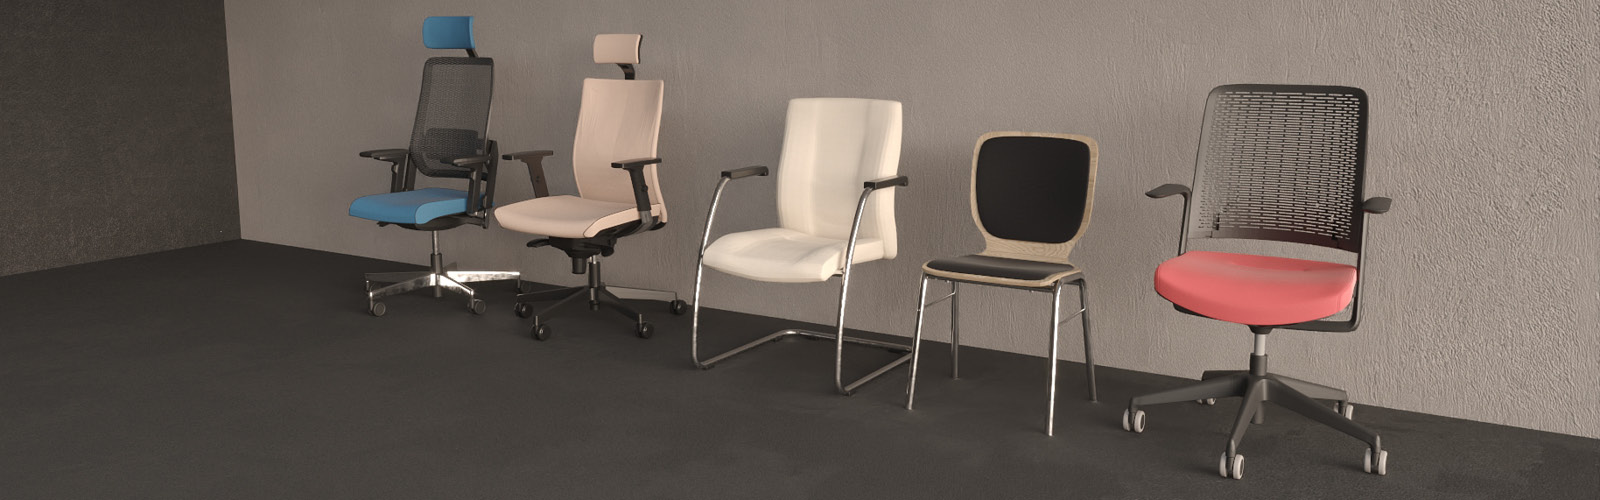 Zestaw krzeseł ułożony w ciemnym wnętrzu - modele obrotowe z zagłowkiem i bez, konferencyjna wersja na płozie oraz na nogach.